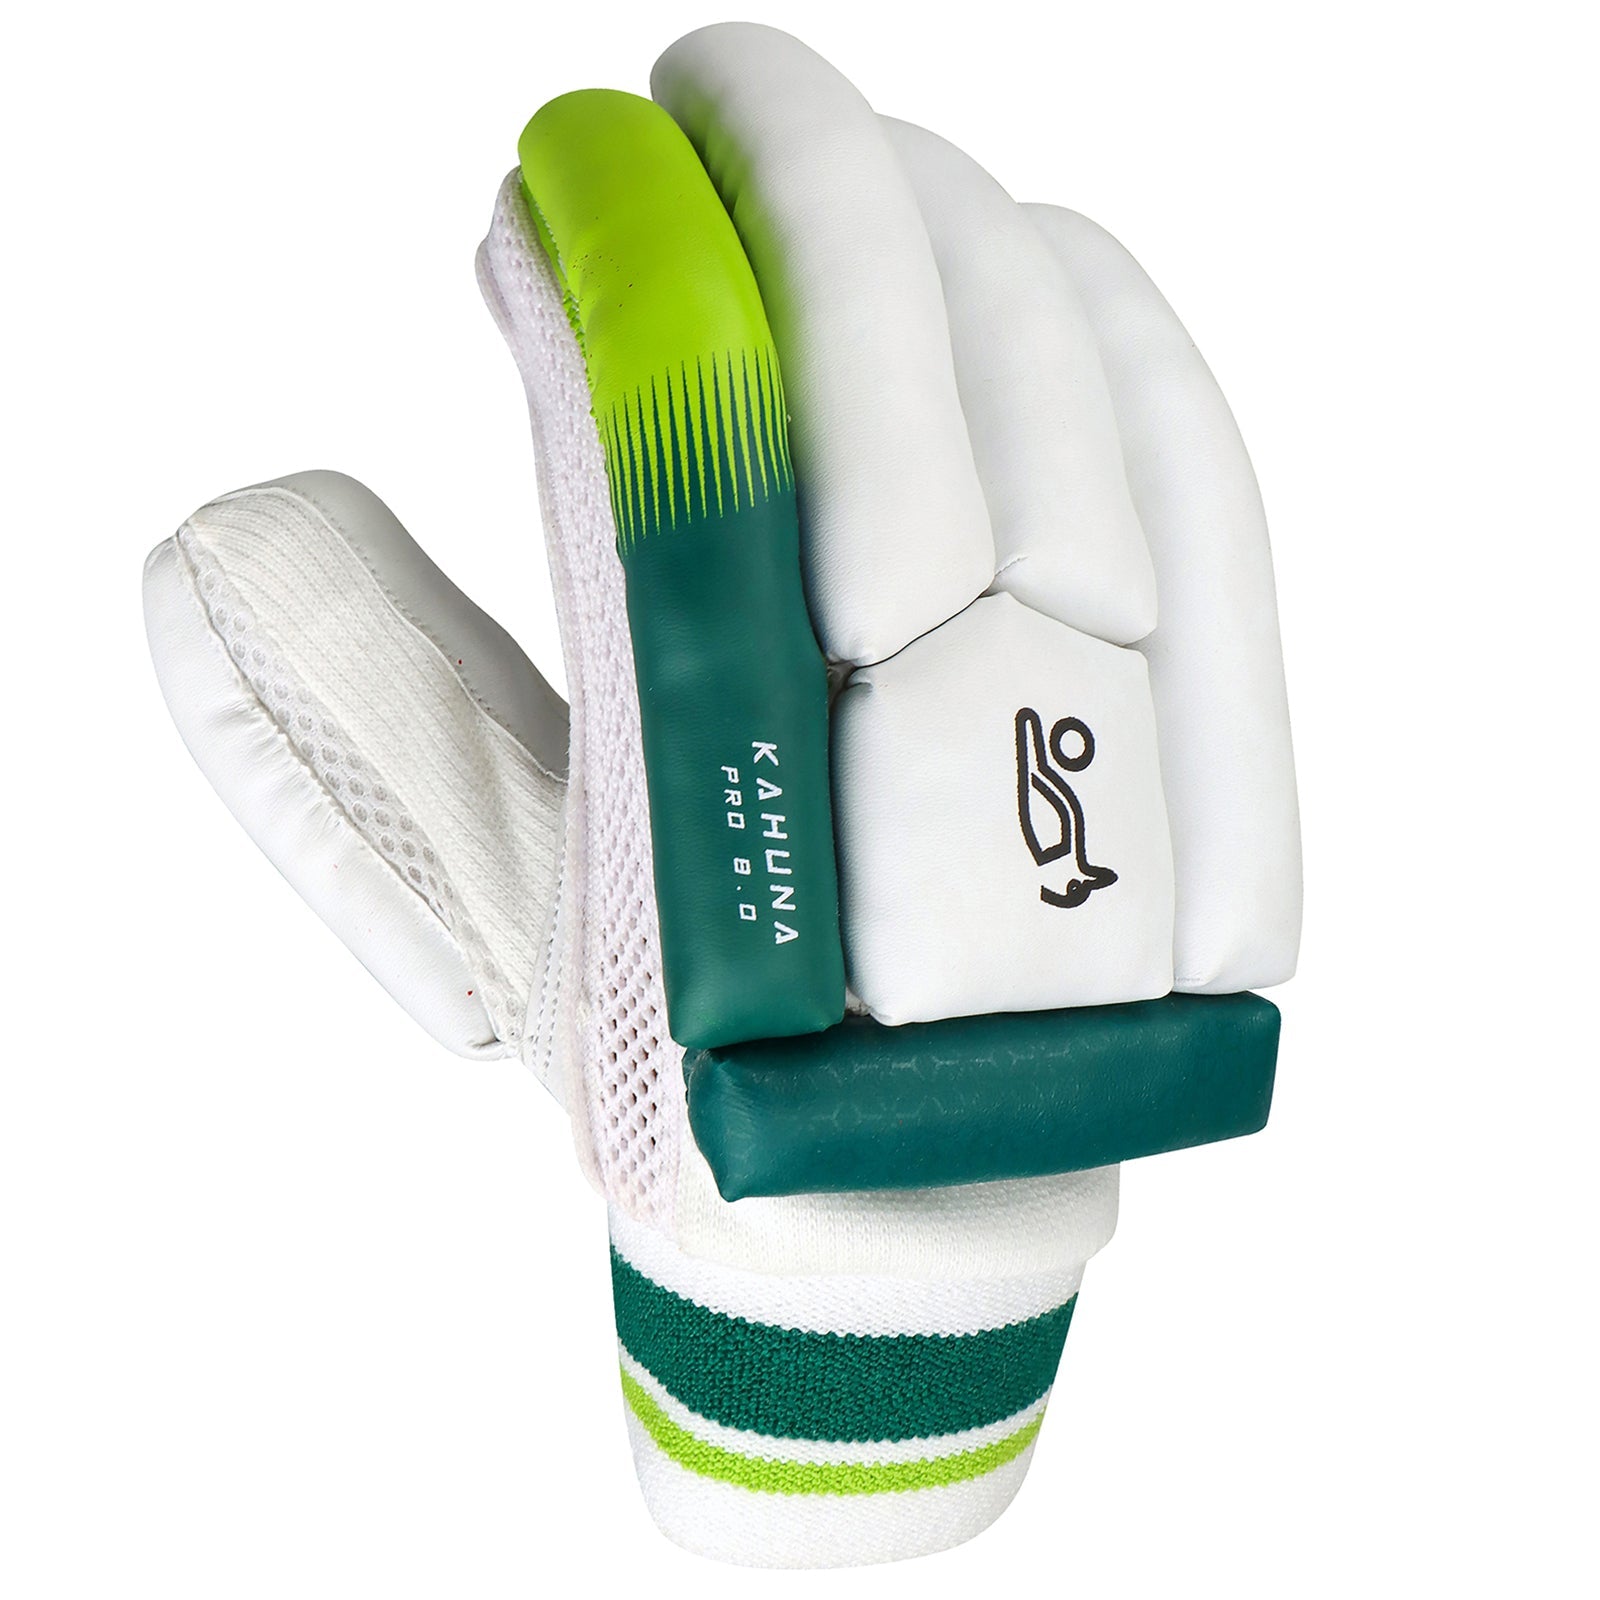 Kookaburra Kahuna Pro 8.0 Batting Gloves - Senior